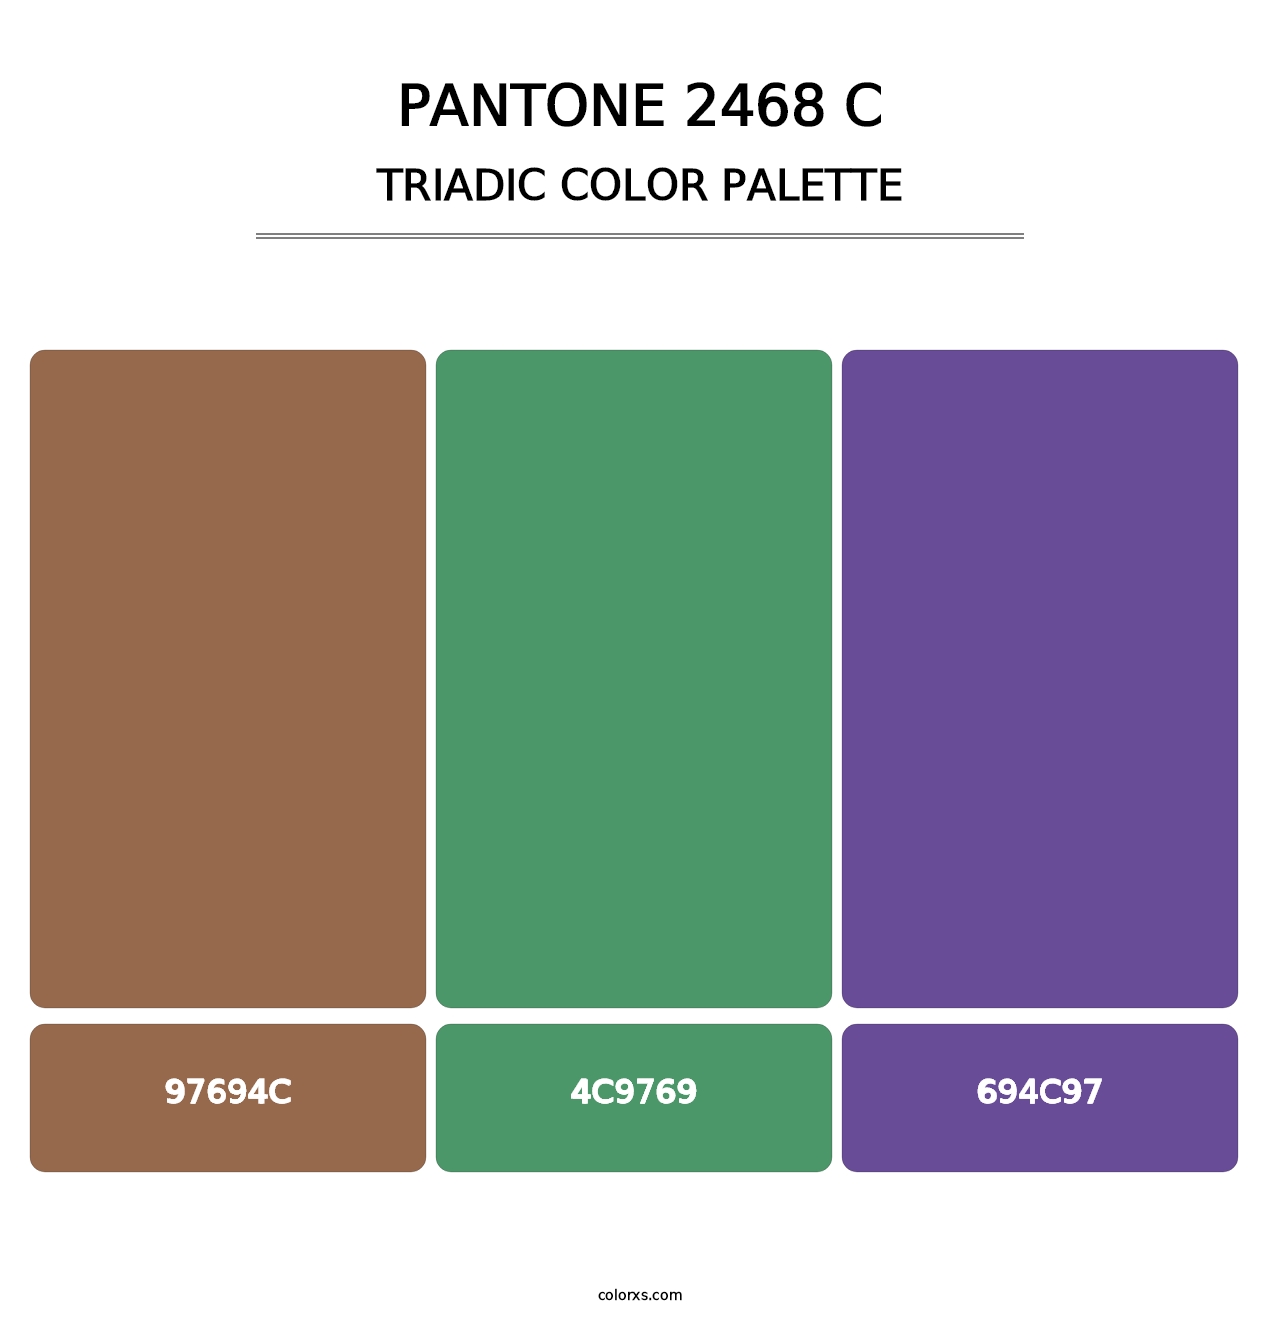 PANTONE 2468 C - Triadic Color Palette